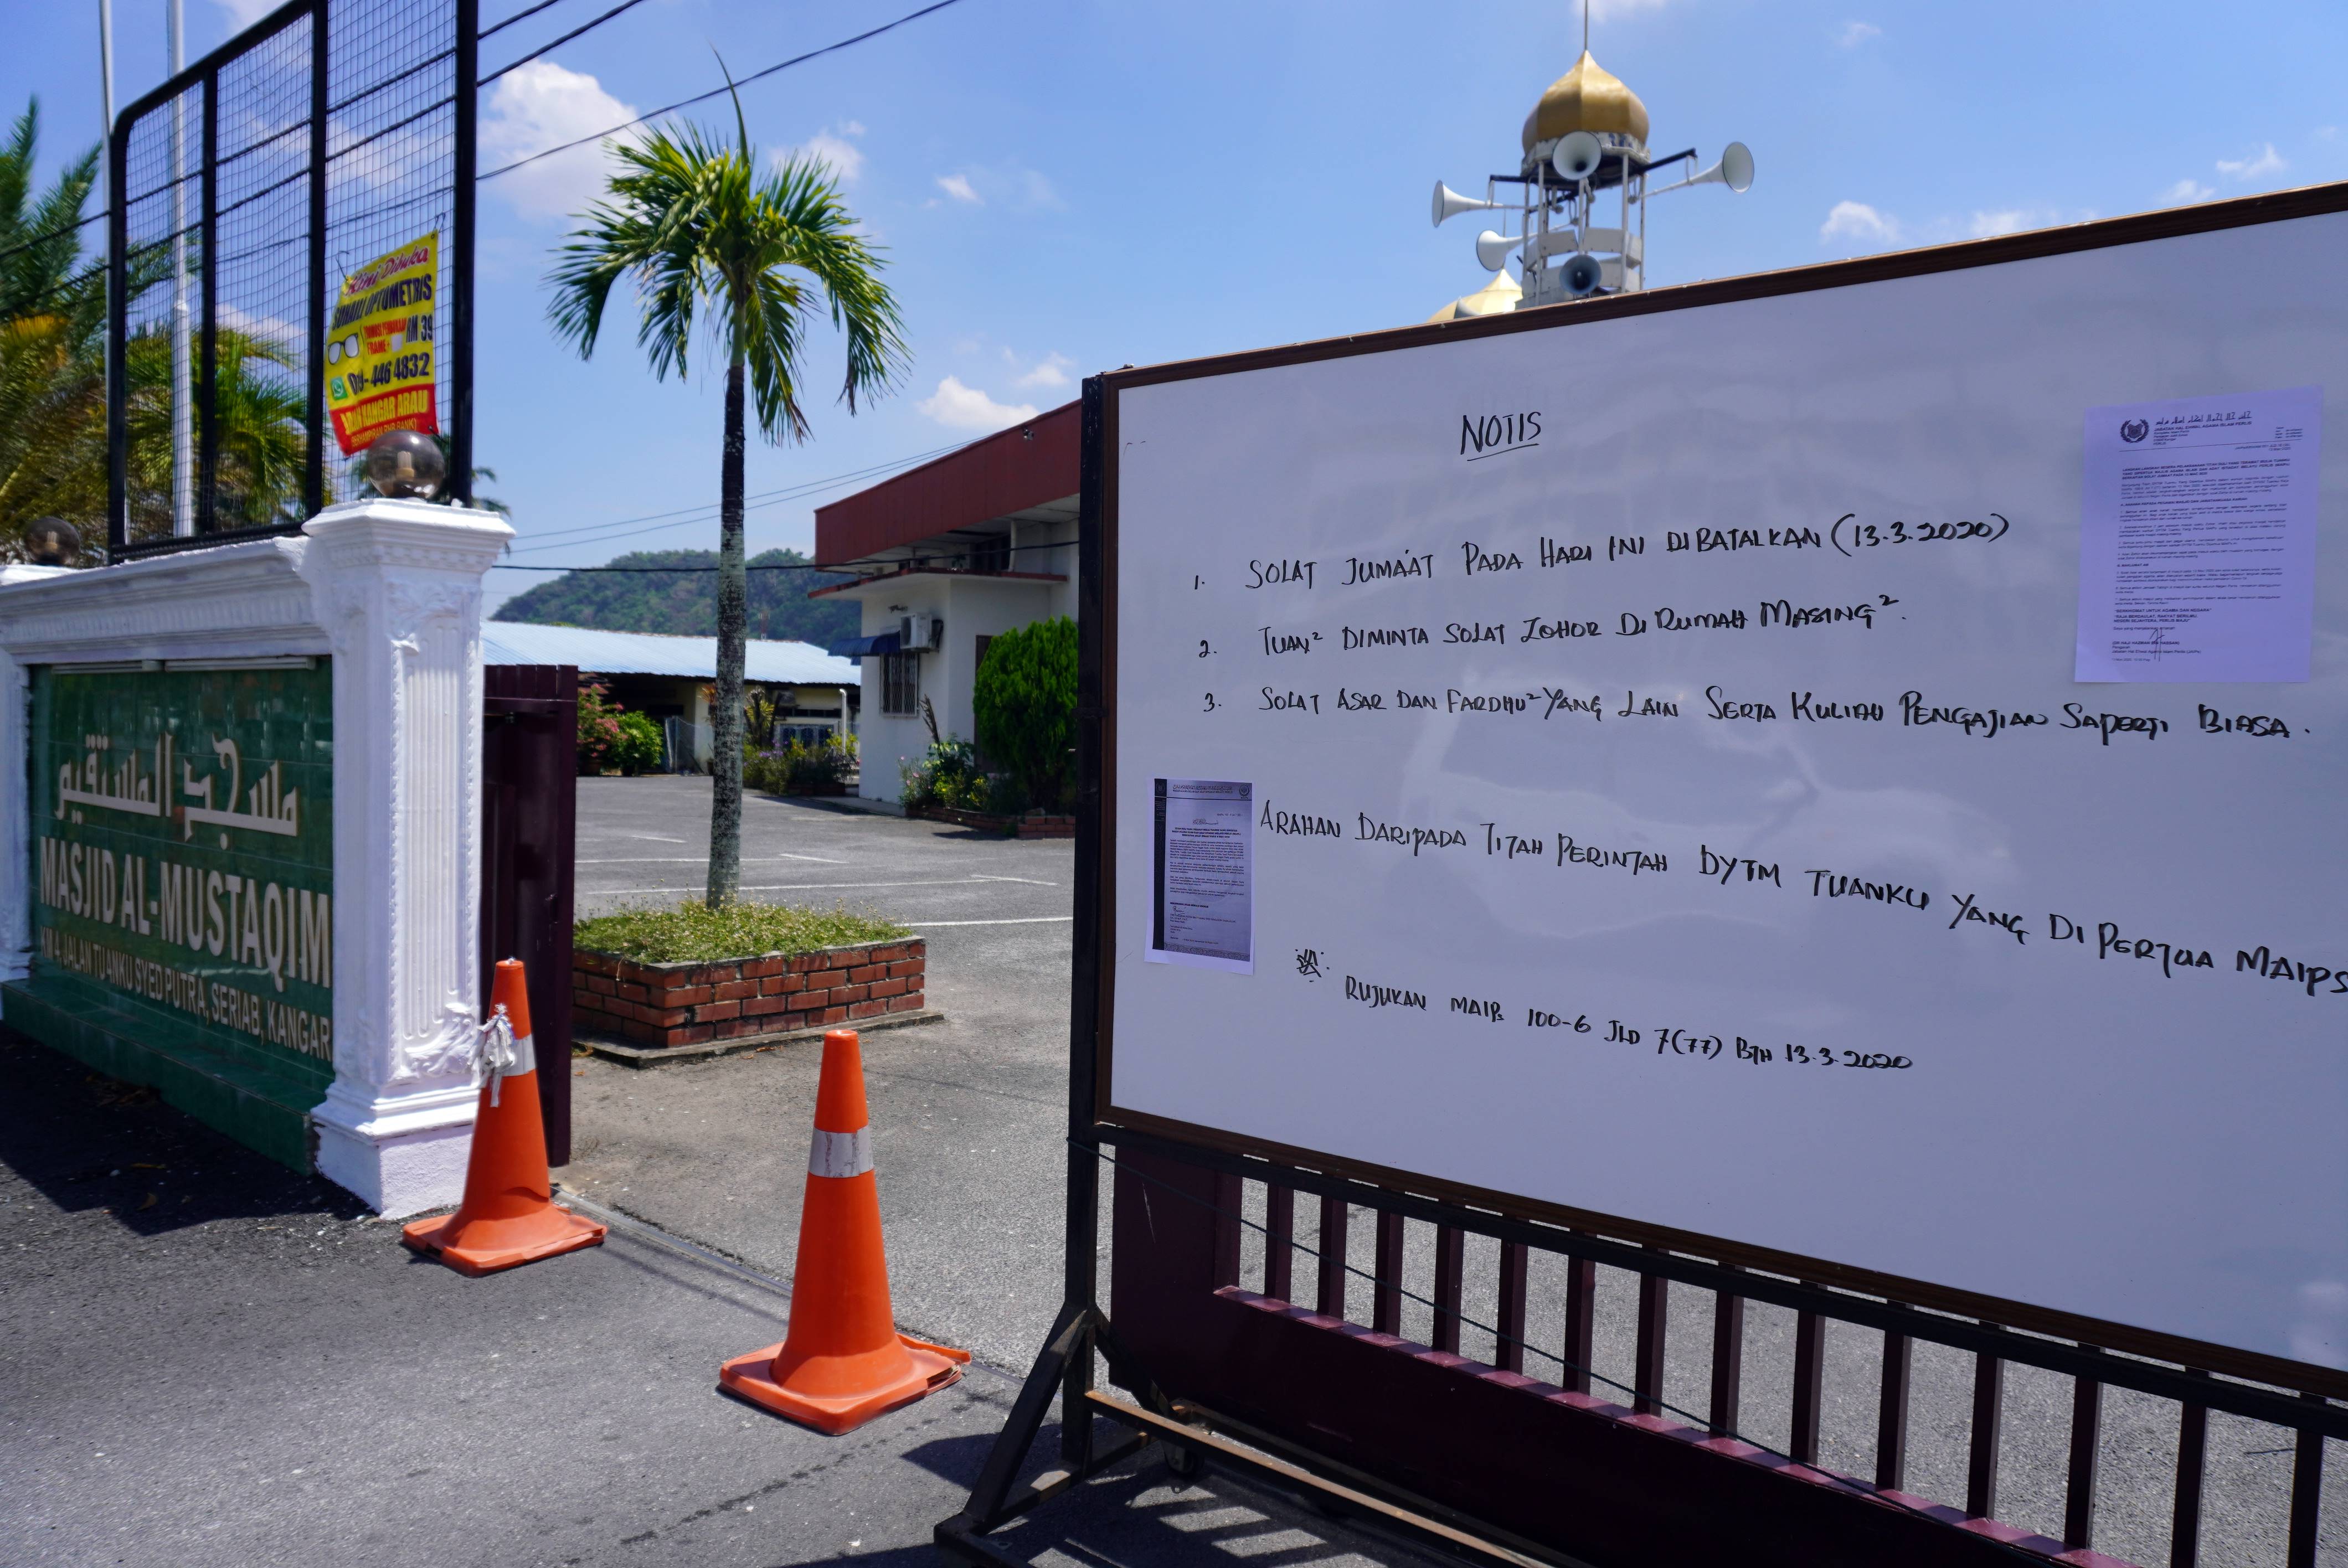 玻州清真寺暂时关闭，并在篱笆门挂上拉惹御令，通知取消周五礼拜。